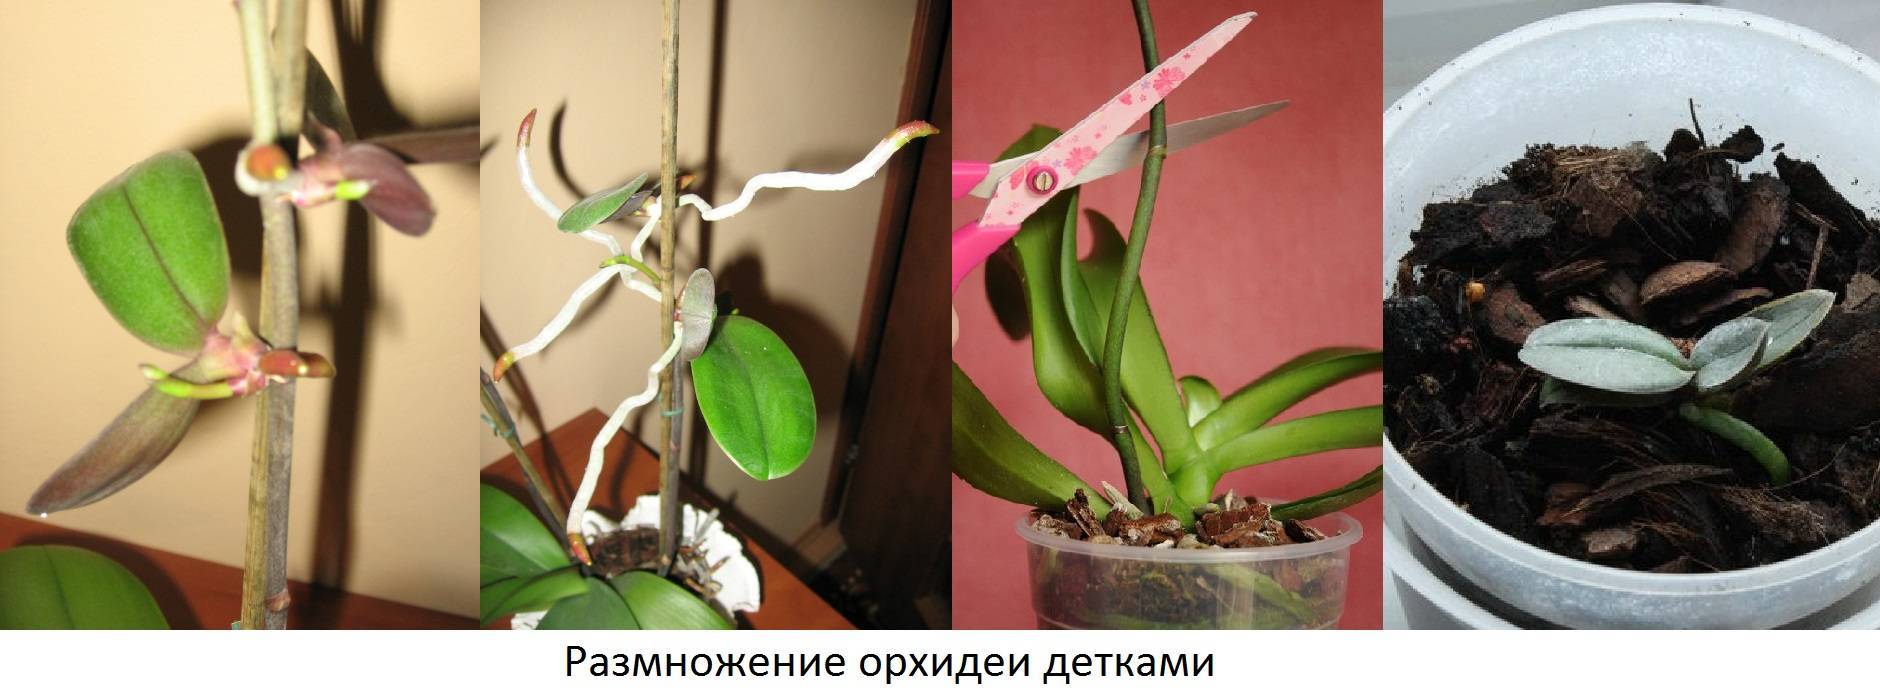 Орхидея фаленопсис: уход в домашних условиях, пересадка и размножение фаленопсиса, болезни и вредители